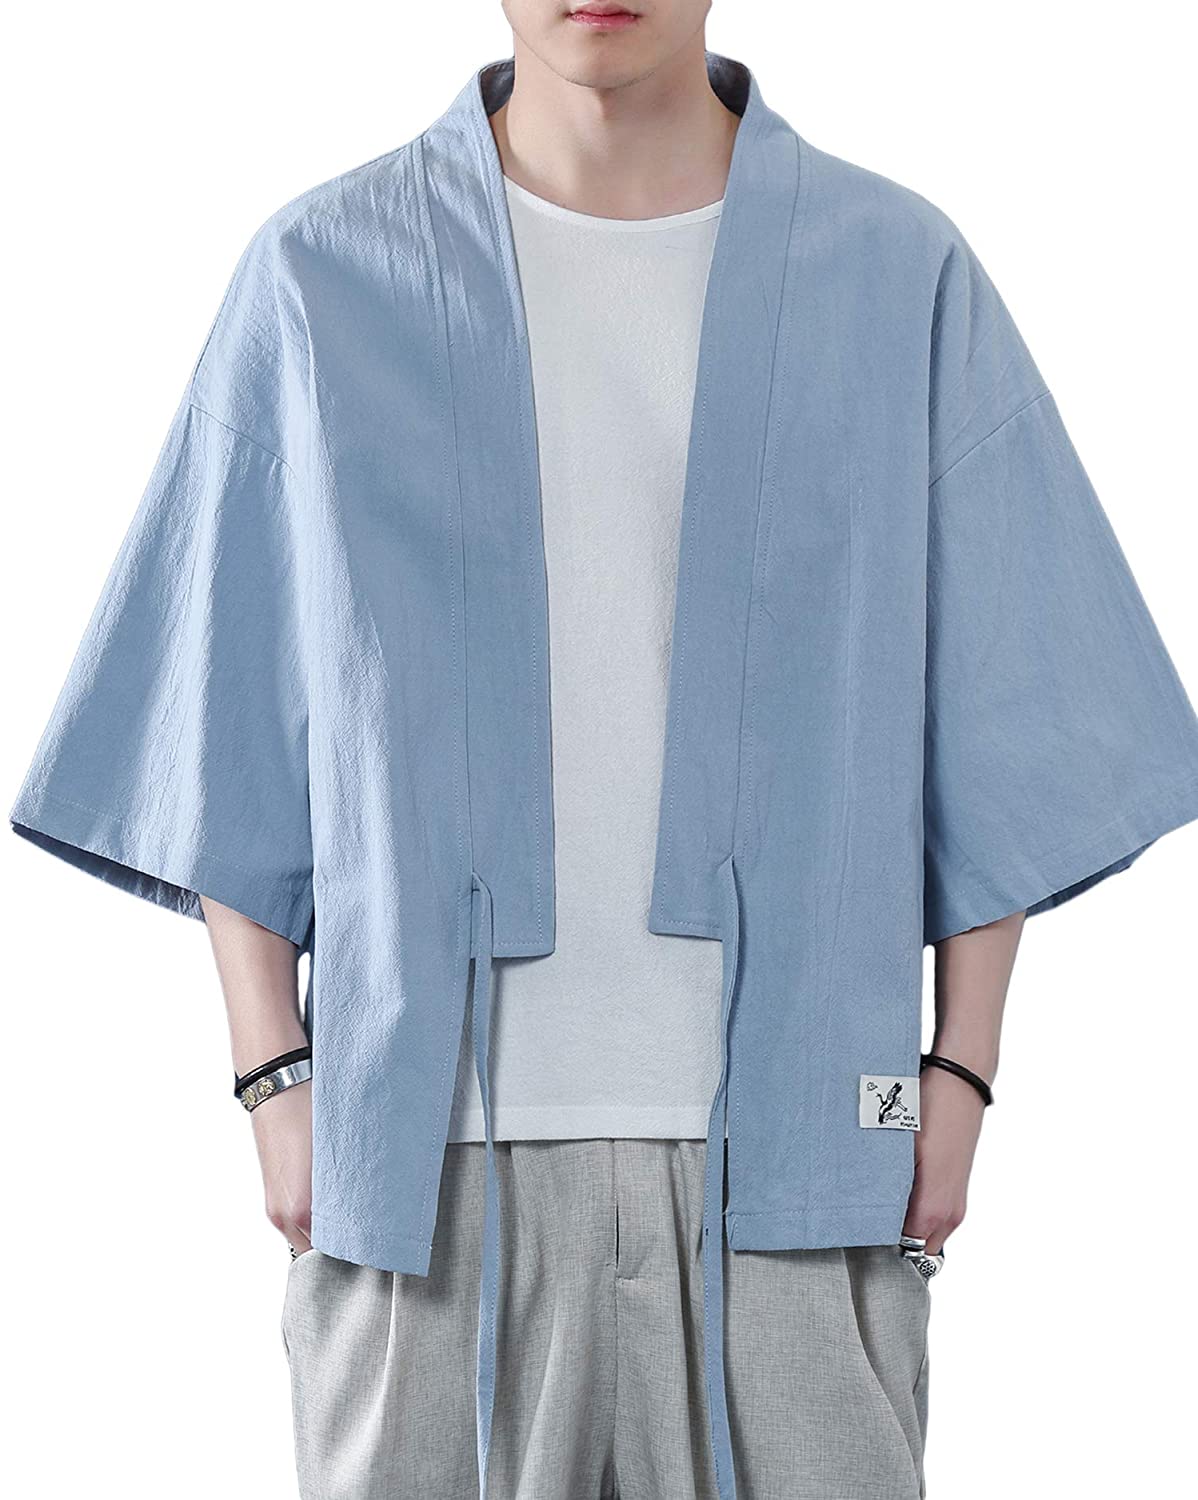 PRIJOUHE Men's Japanese Kimono Coat 